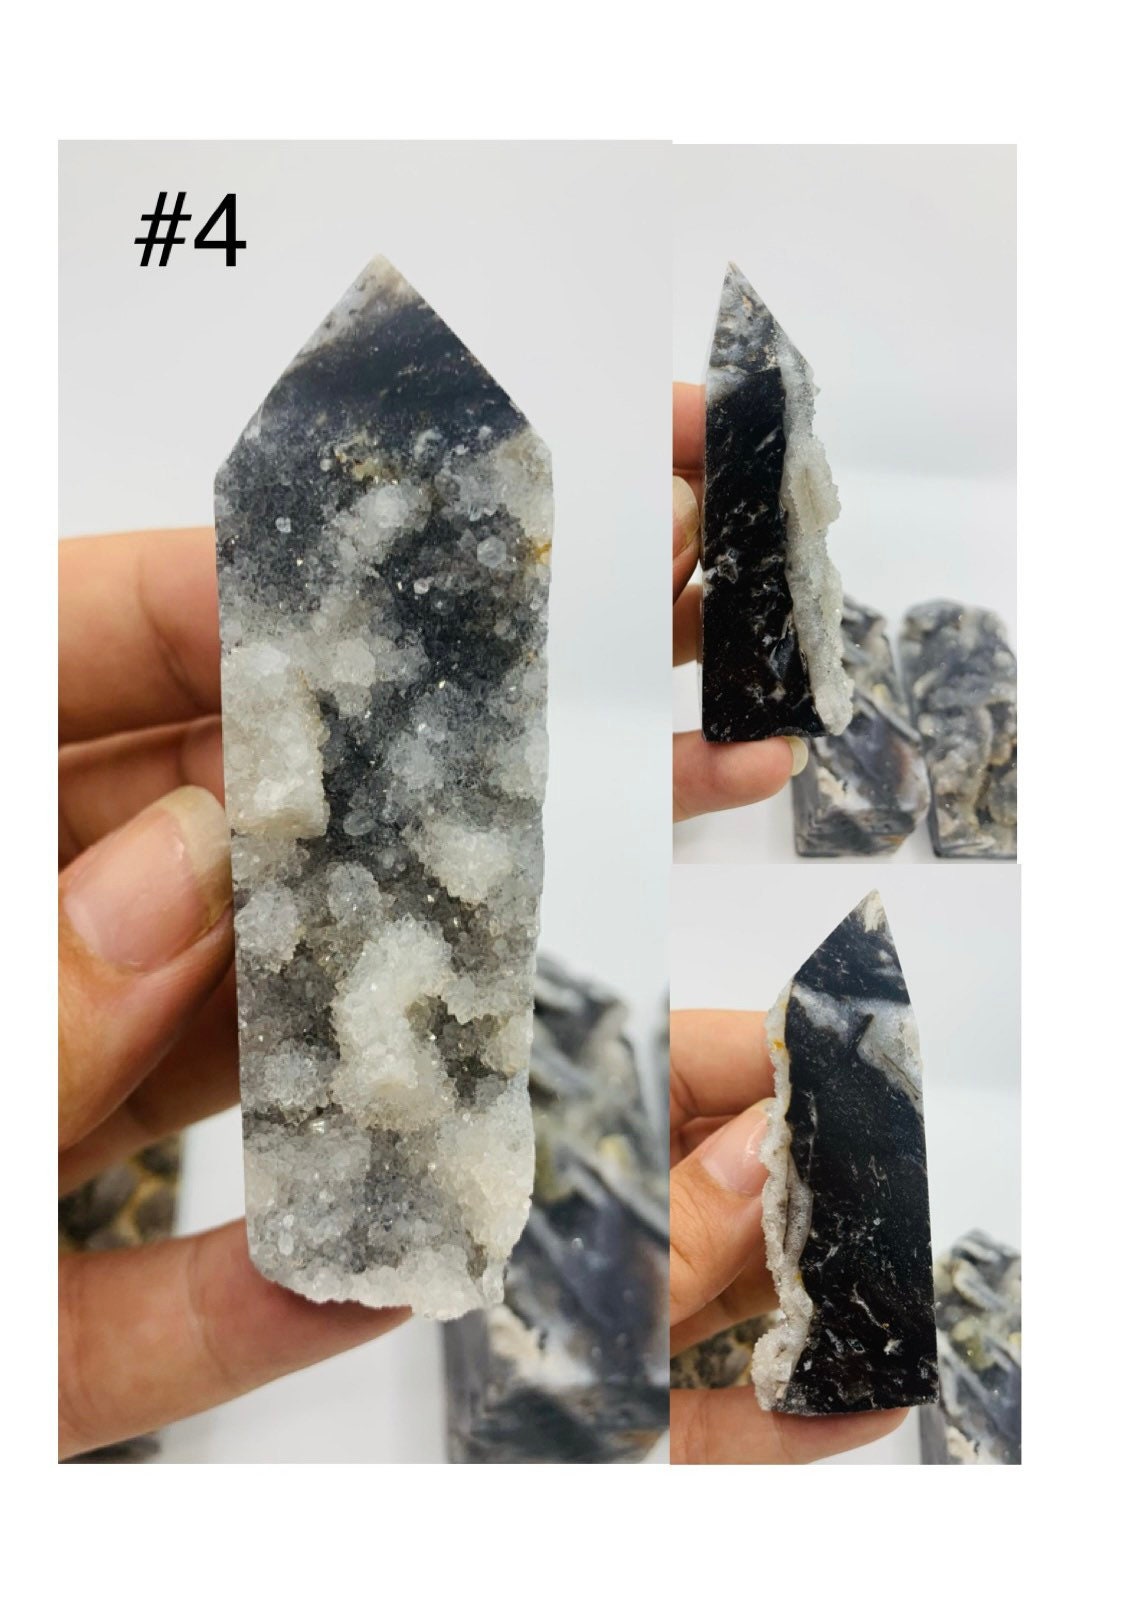 Black Sphalerite Crystal Towers pieces 1-6